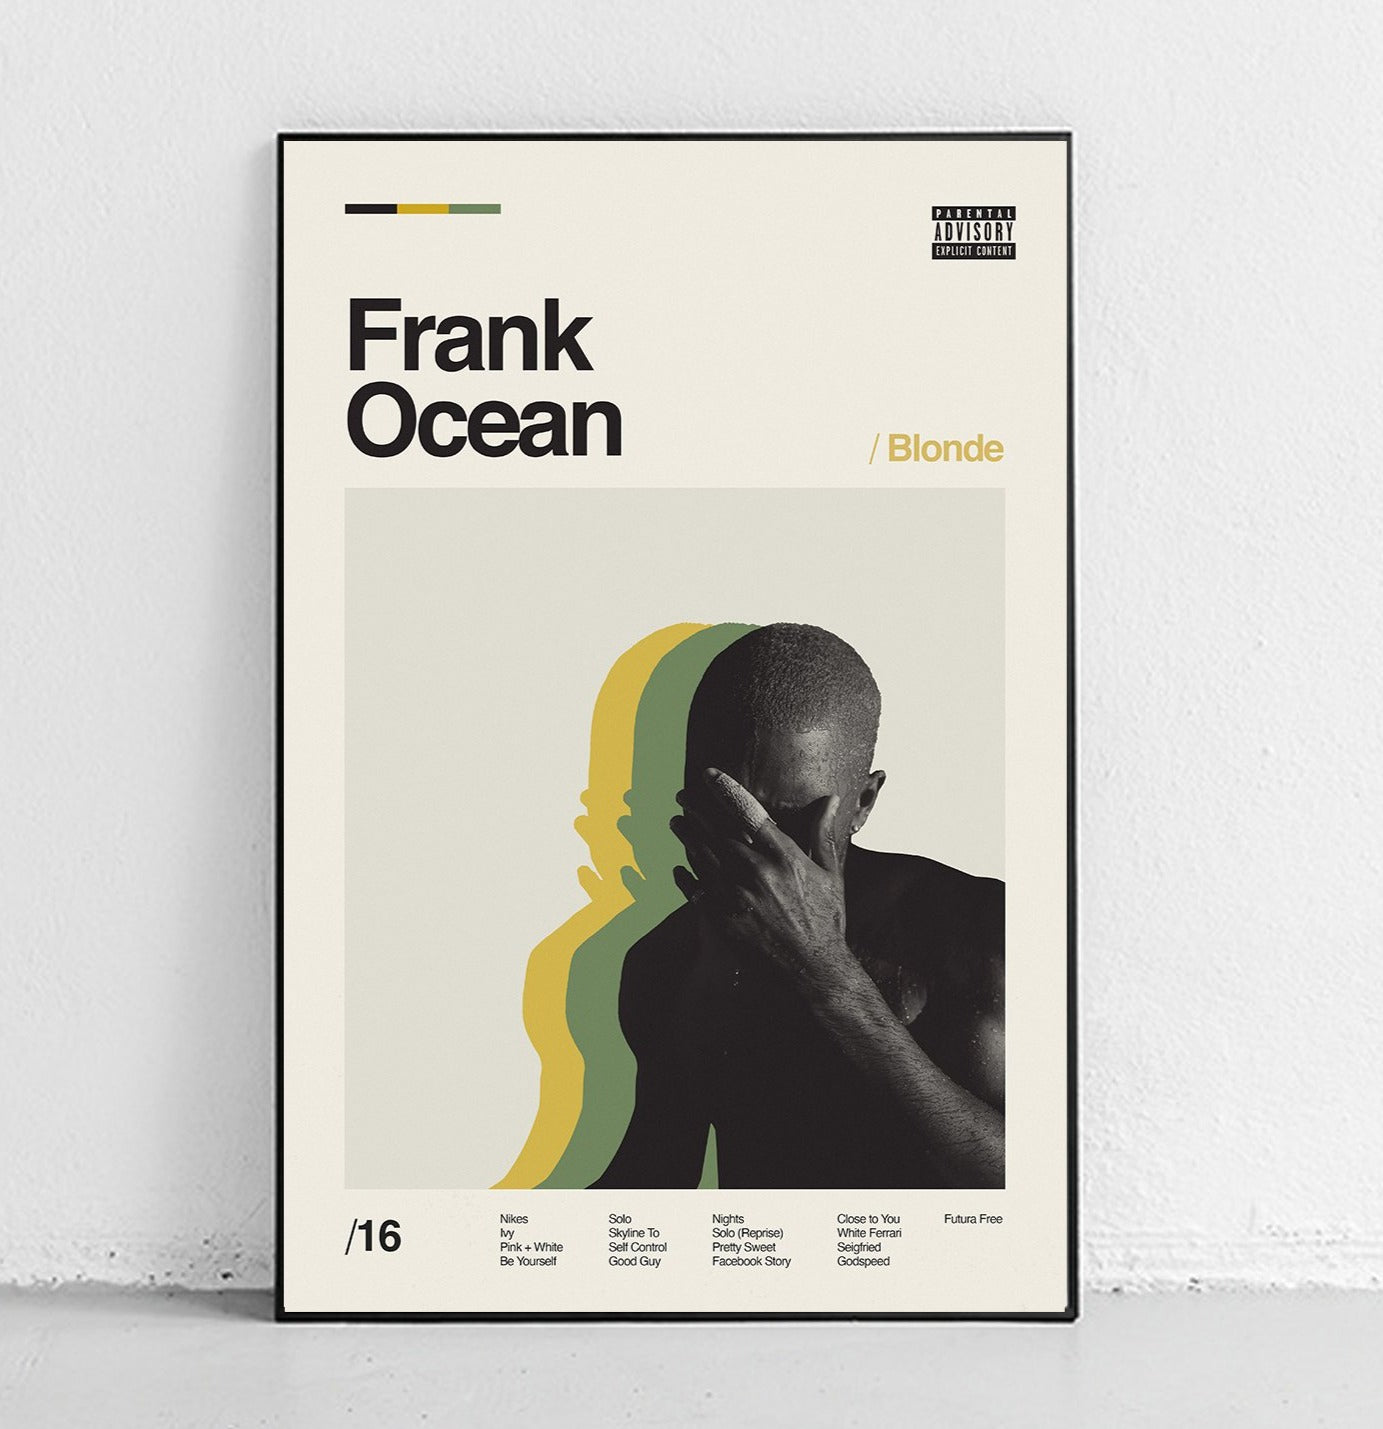 pink + white// frank ocean  Frank ocean, Frank ocean songs, Frank